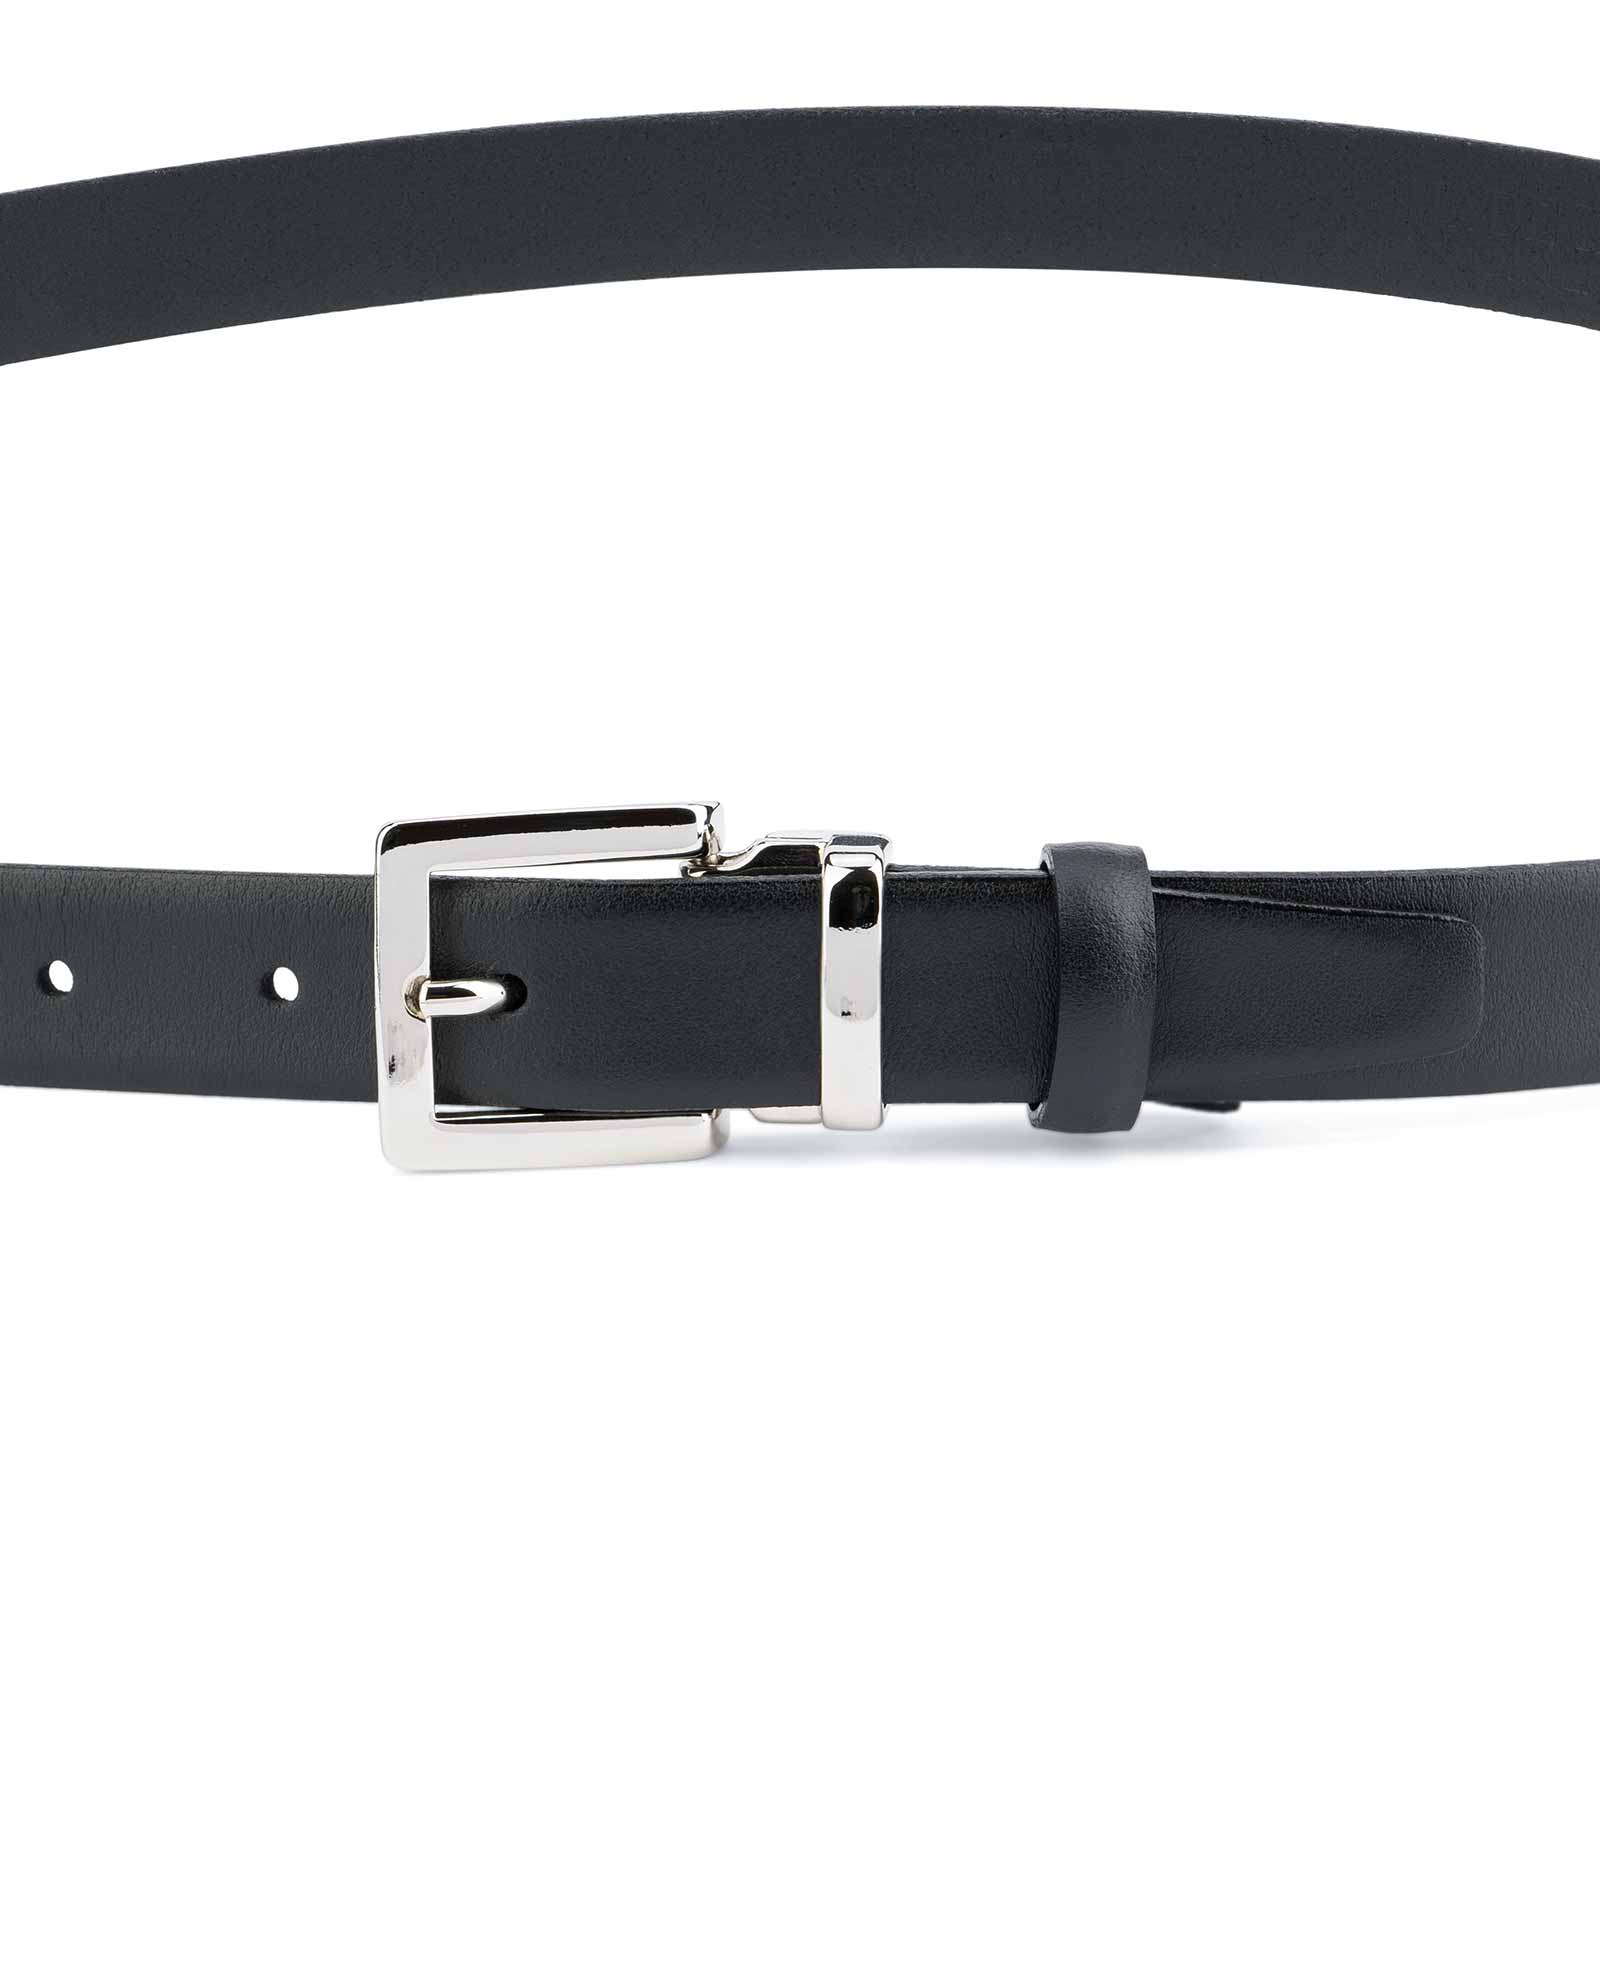 Buy 1 inch Black Leather Belt | Italian Buckle | LeatherBeltsOnline.com